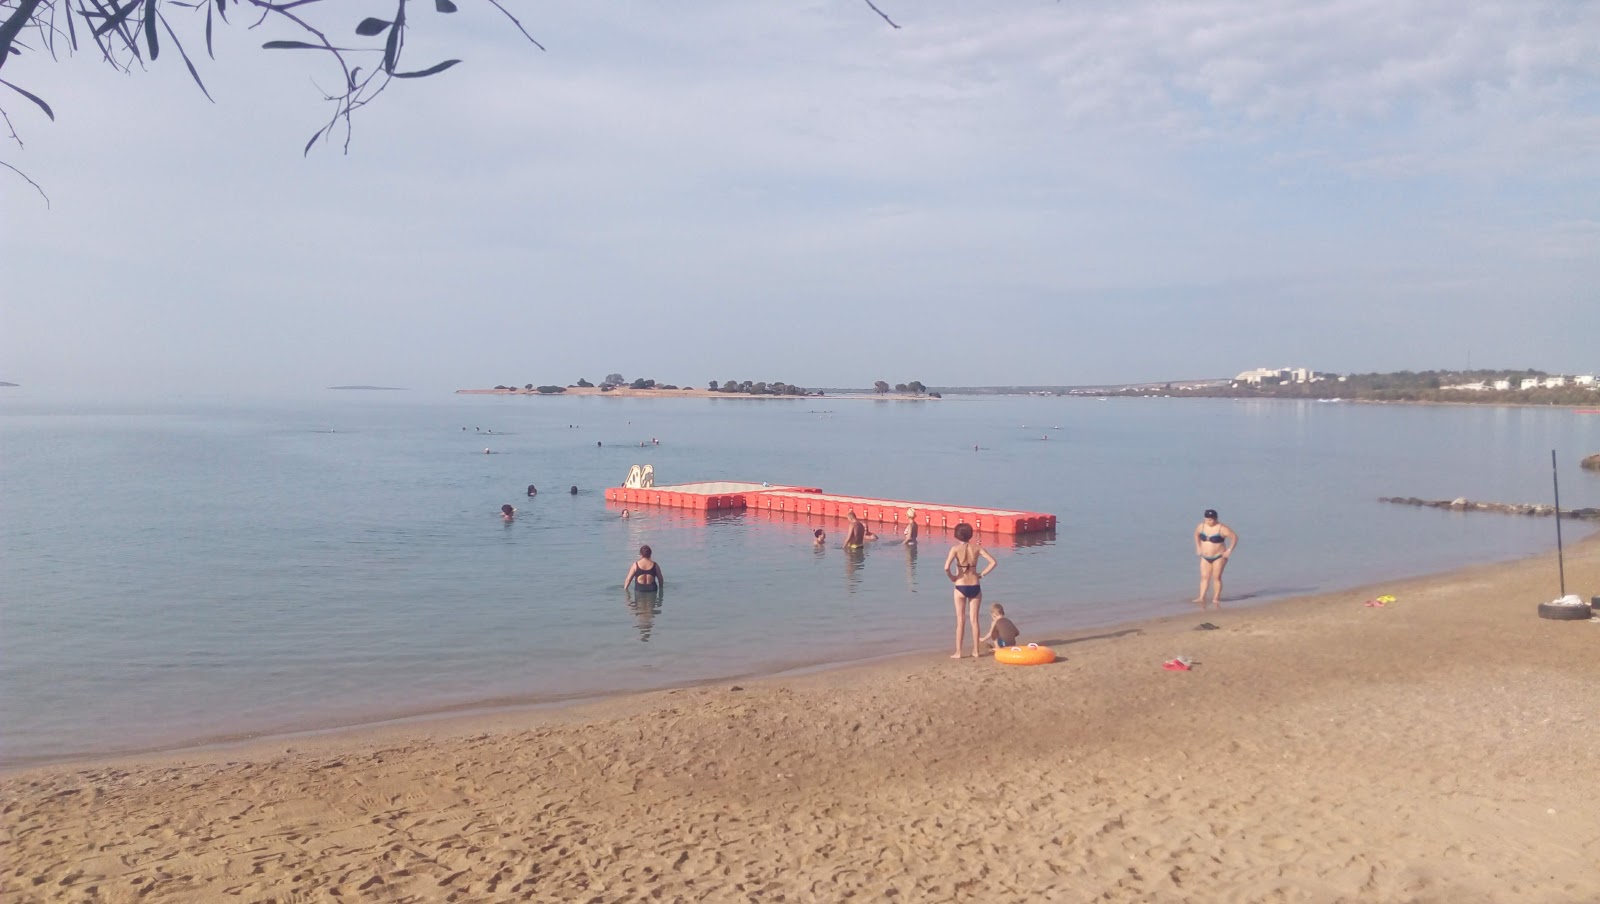 Kerem beach II'in fotoğrafı imkanlar alanı